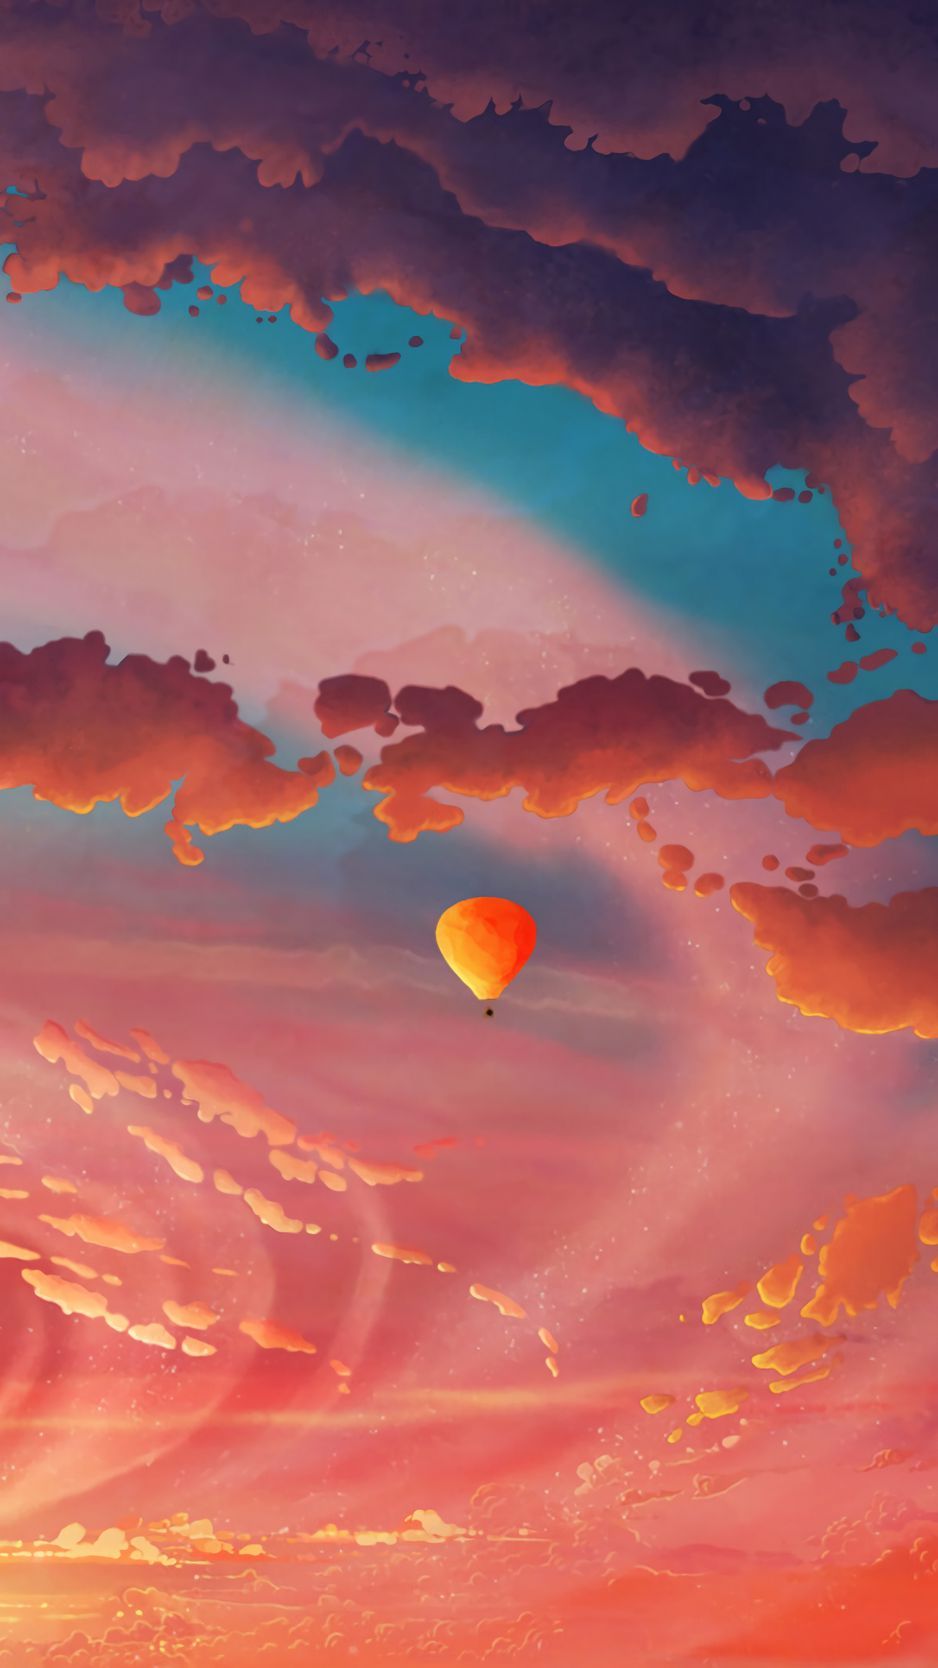 Download wallpaper 938x1668 air balloon, aerostat, art, clouds